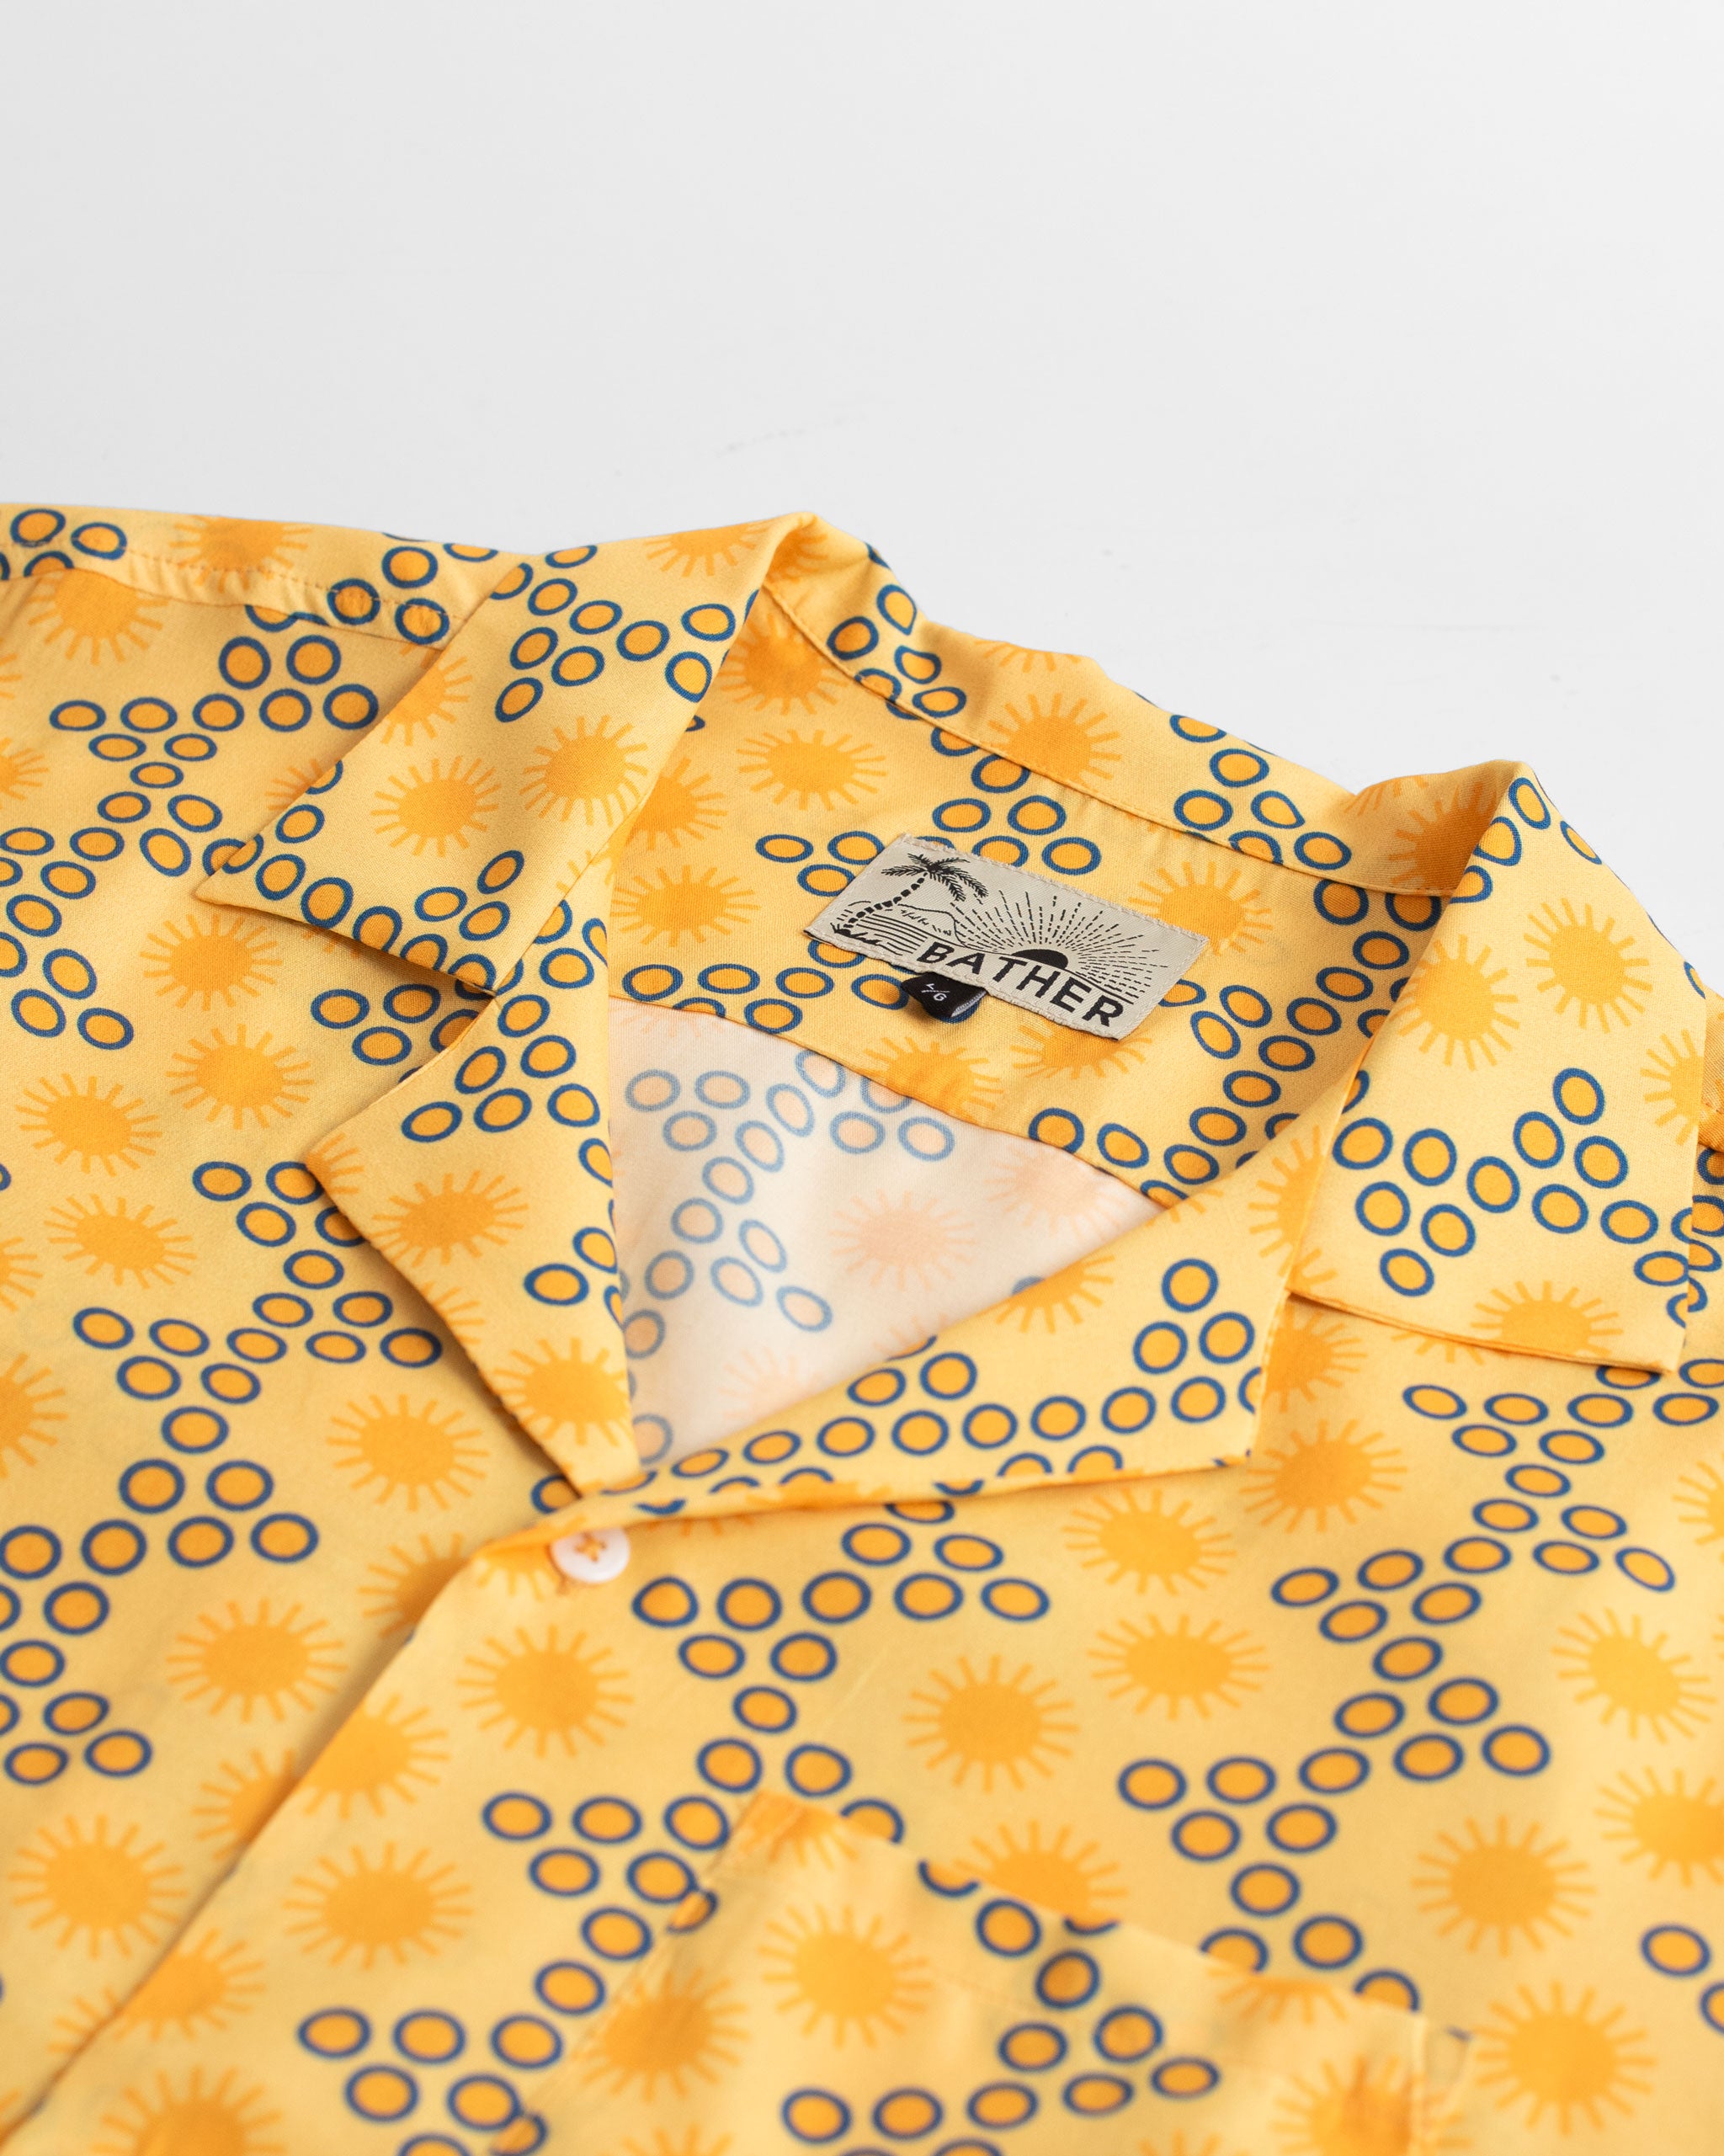 collar close up Yellow Disco Sun Graphic Rayon Camp Shirt